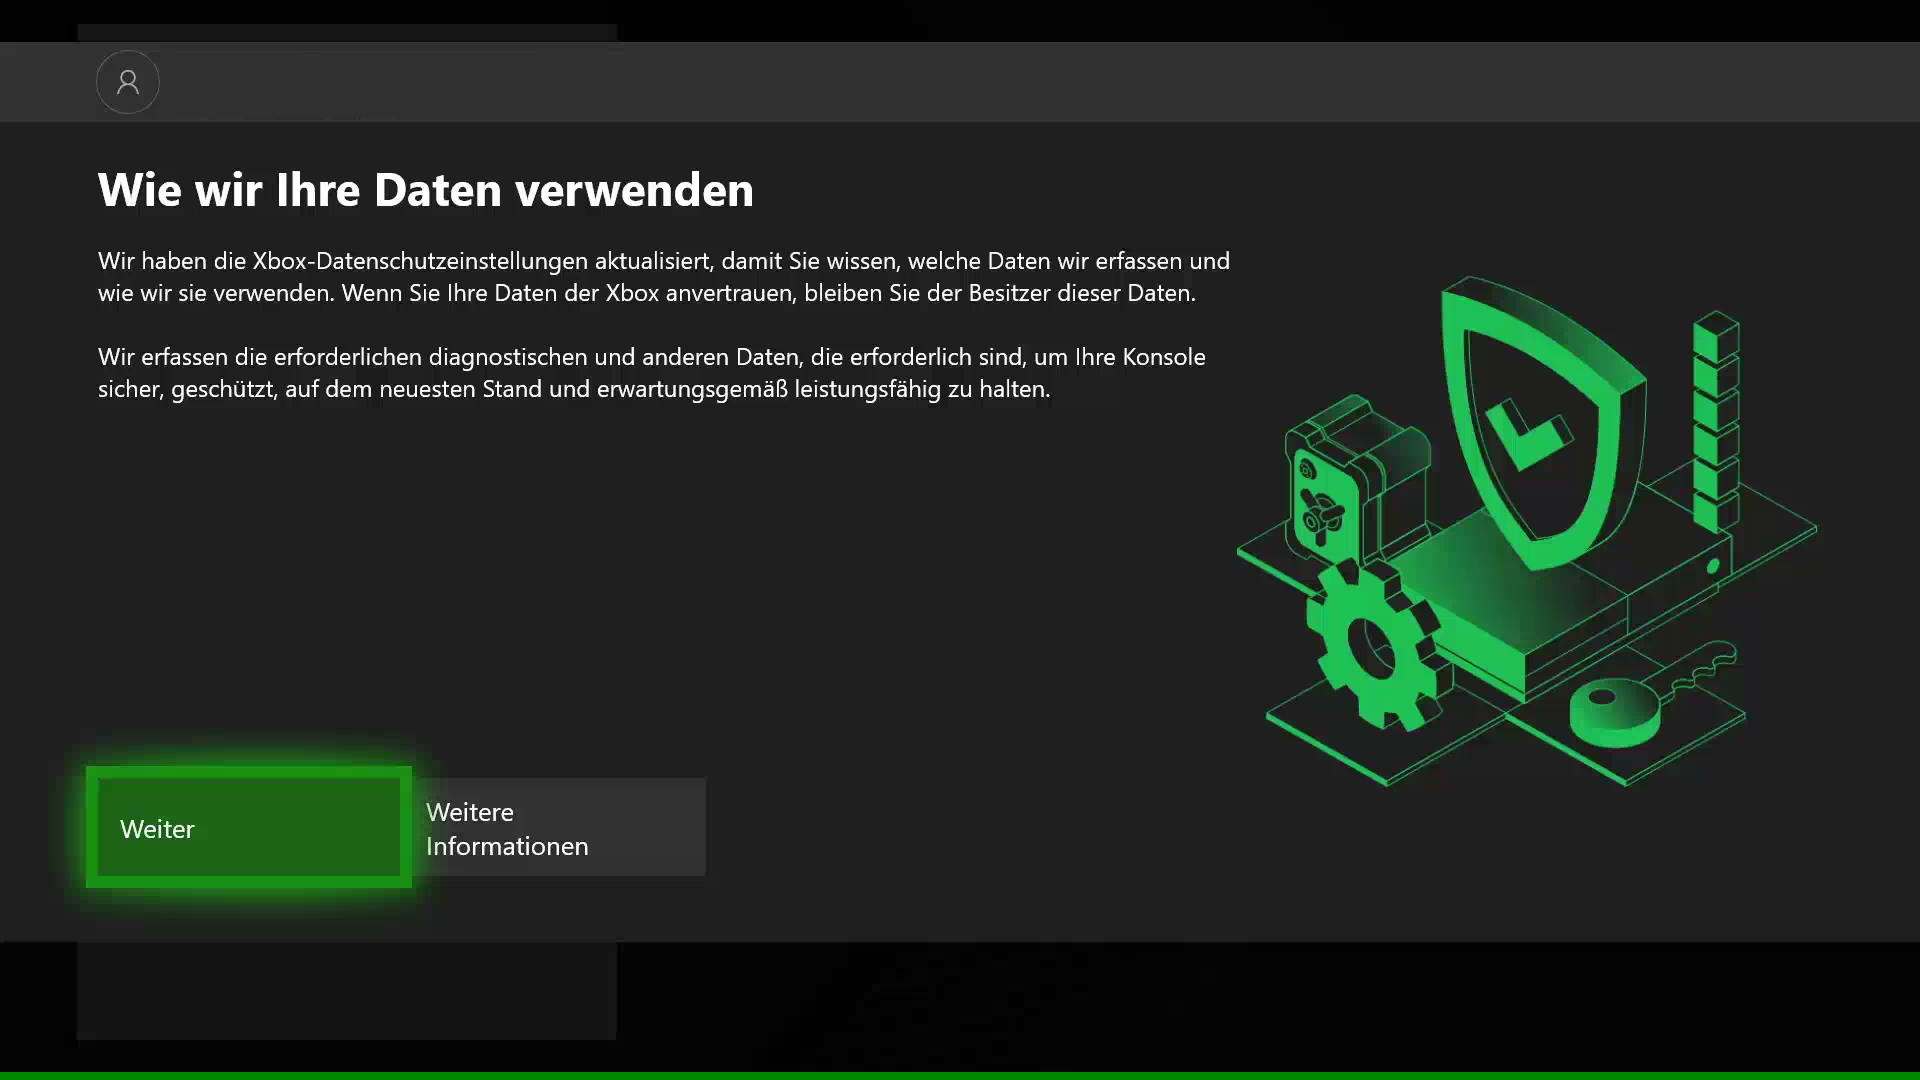 Xbox One-Update im August: Erhalte mehr Transparenz und Kontrolle über die Nutzung Deiner Daten HERO